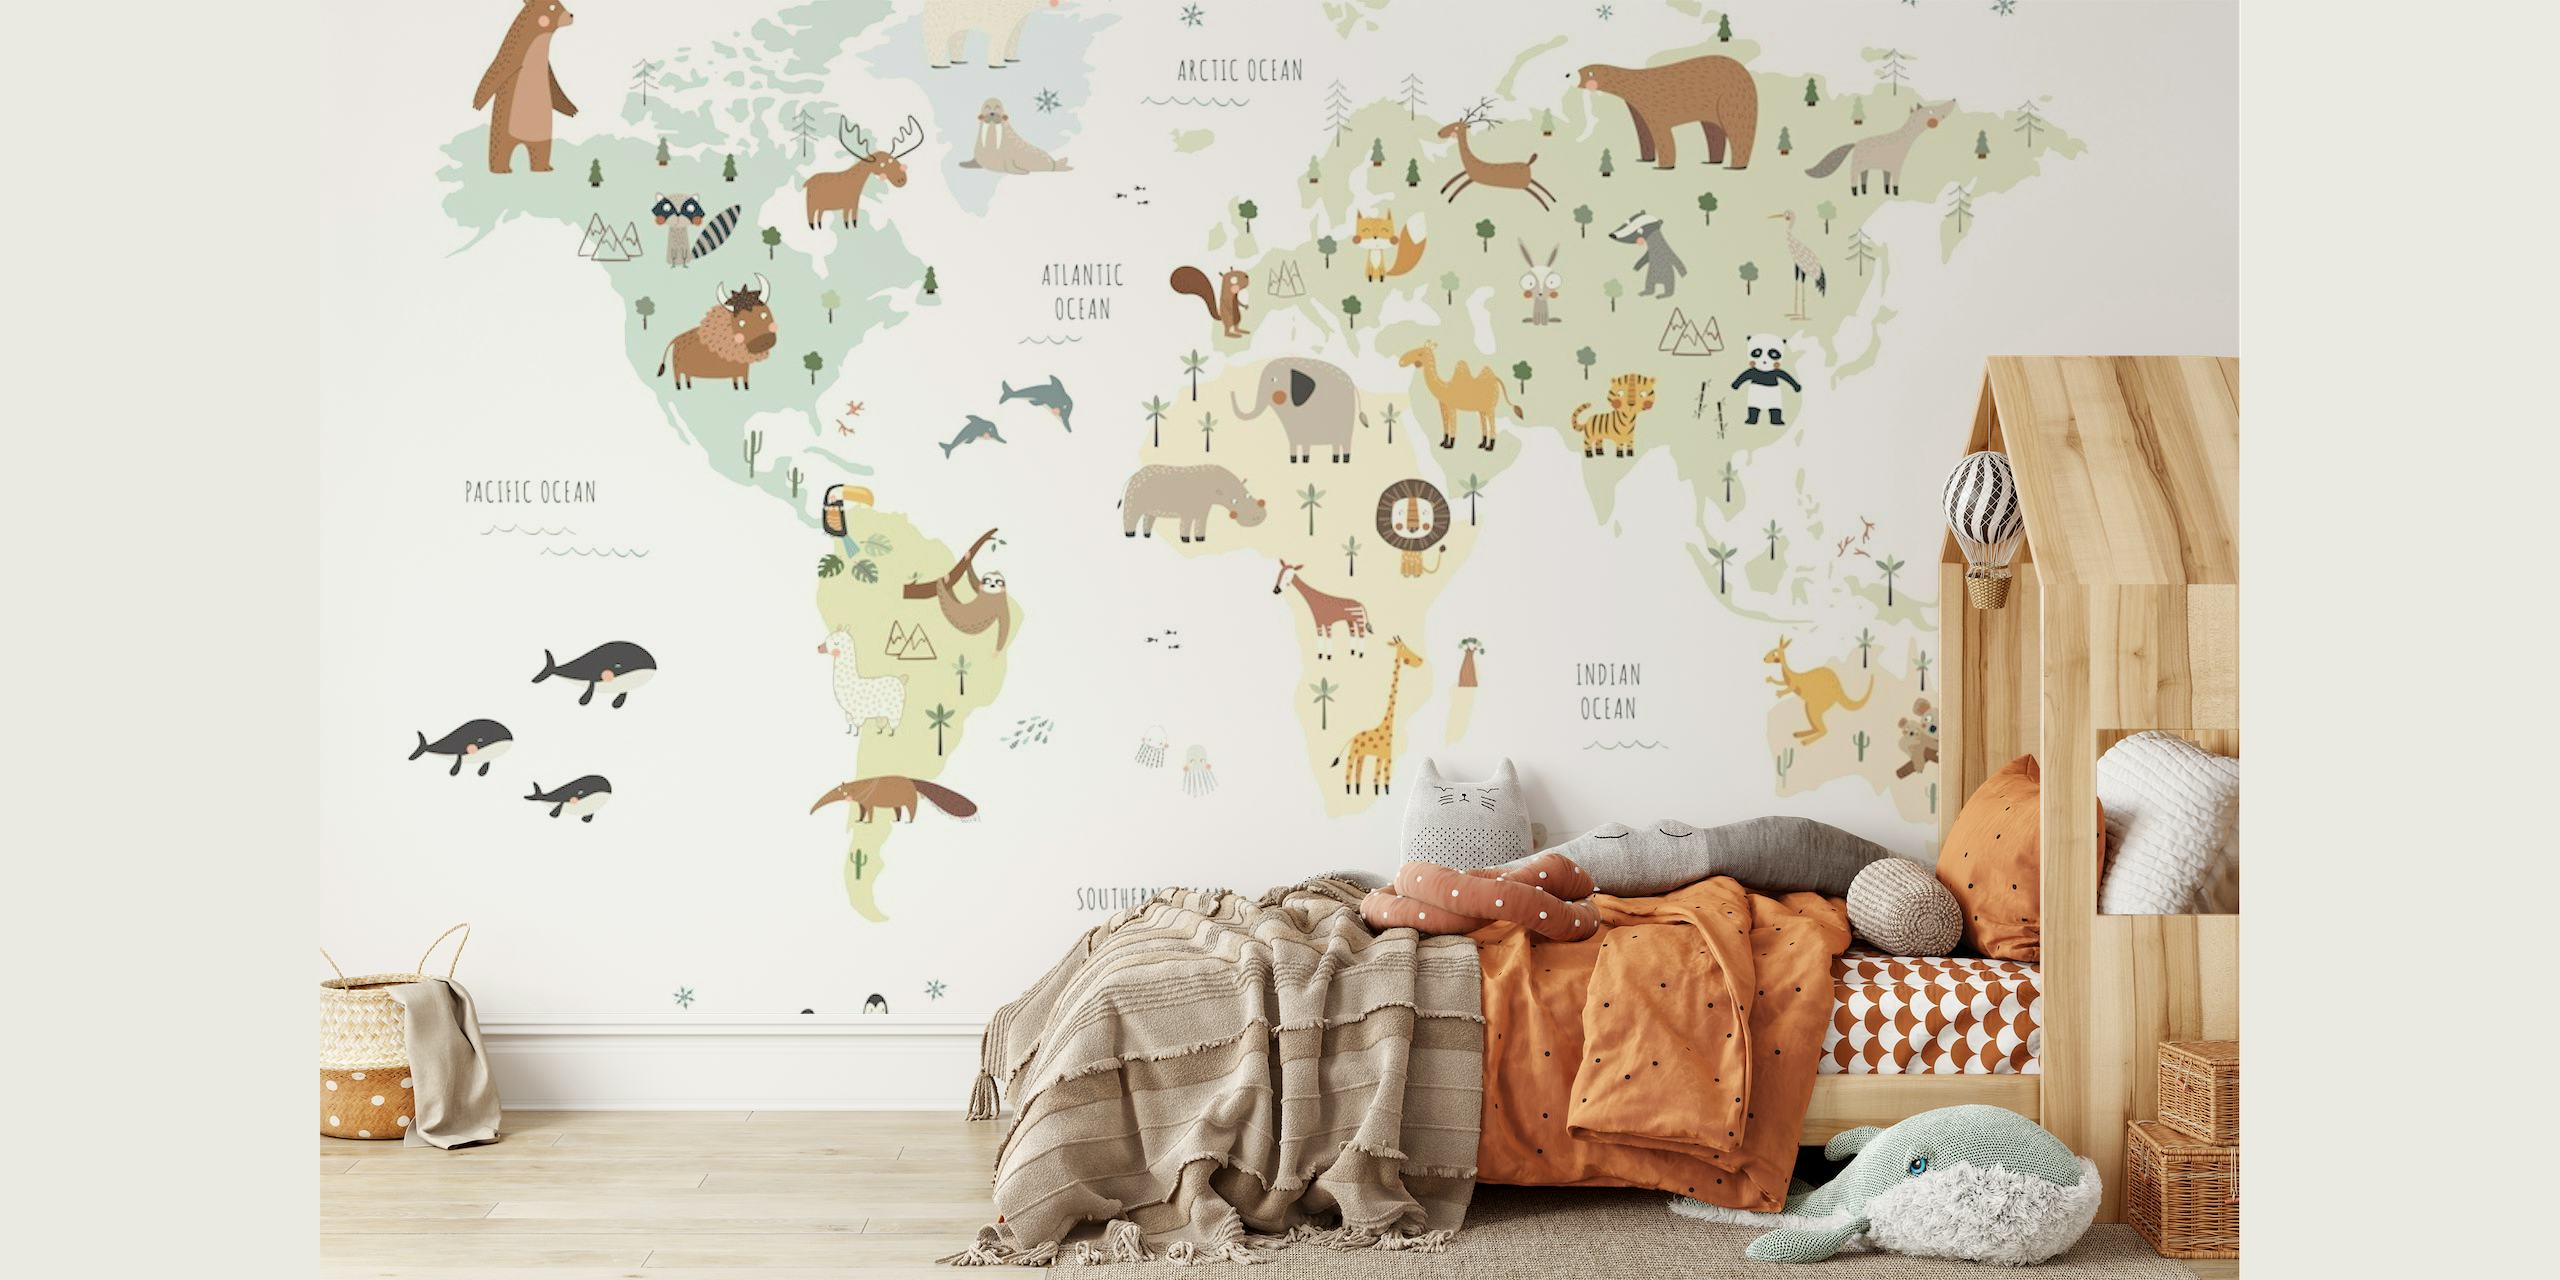 Ilustrowana fototapeta z mapą świata z kolorowymi zwierzętami reprezentującymi różne regiony